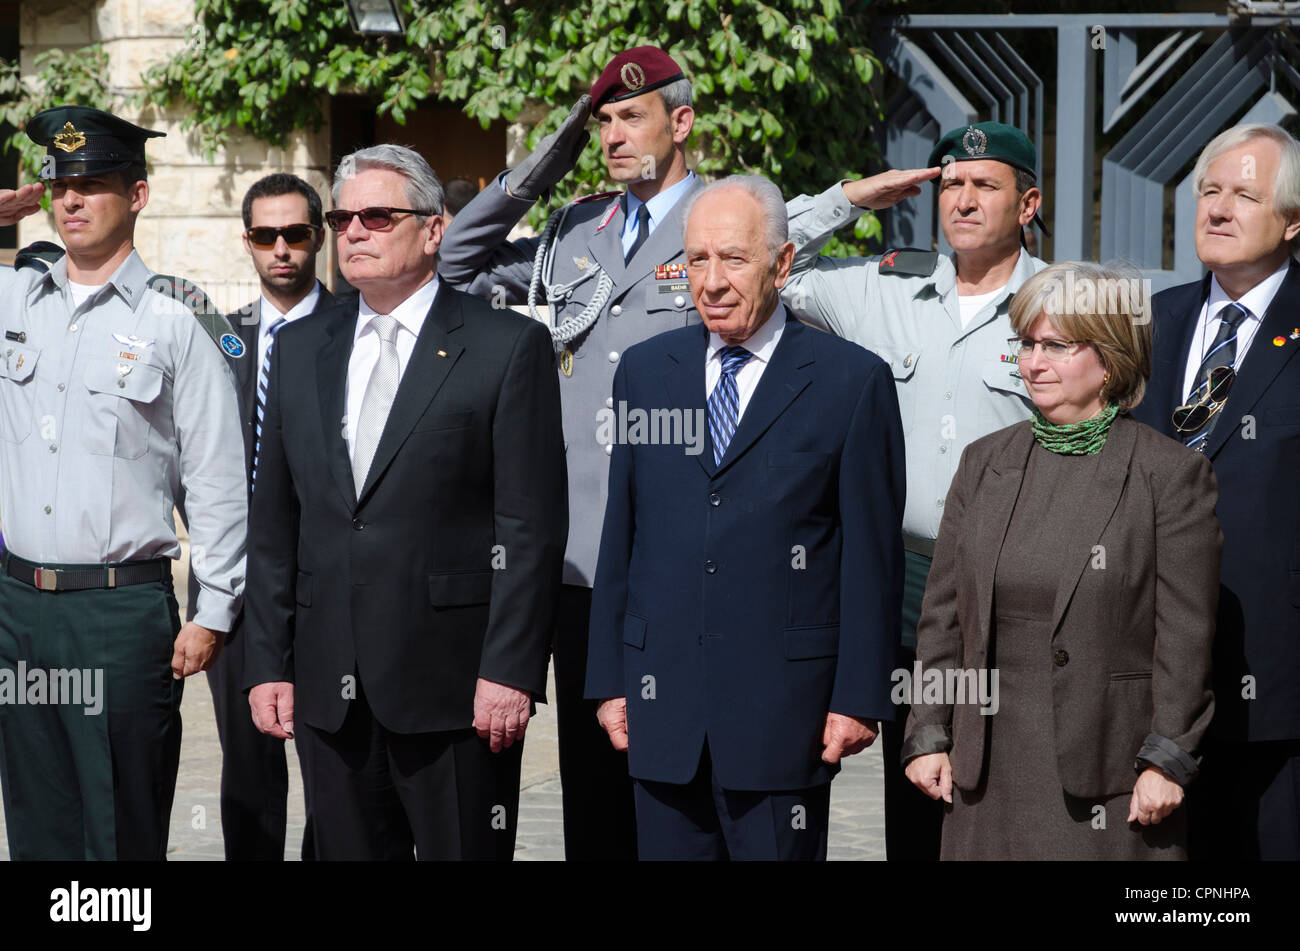 El Presidente de Israel, Shimon Peres, y su homólogo alemán Joachim Gauck revisar una guardia de honor militar durante una ceremonia bienvenidos Foto de stock